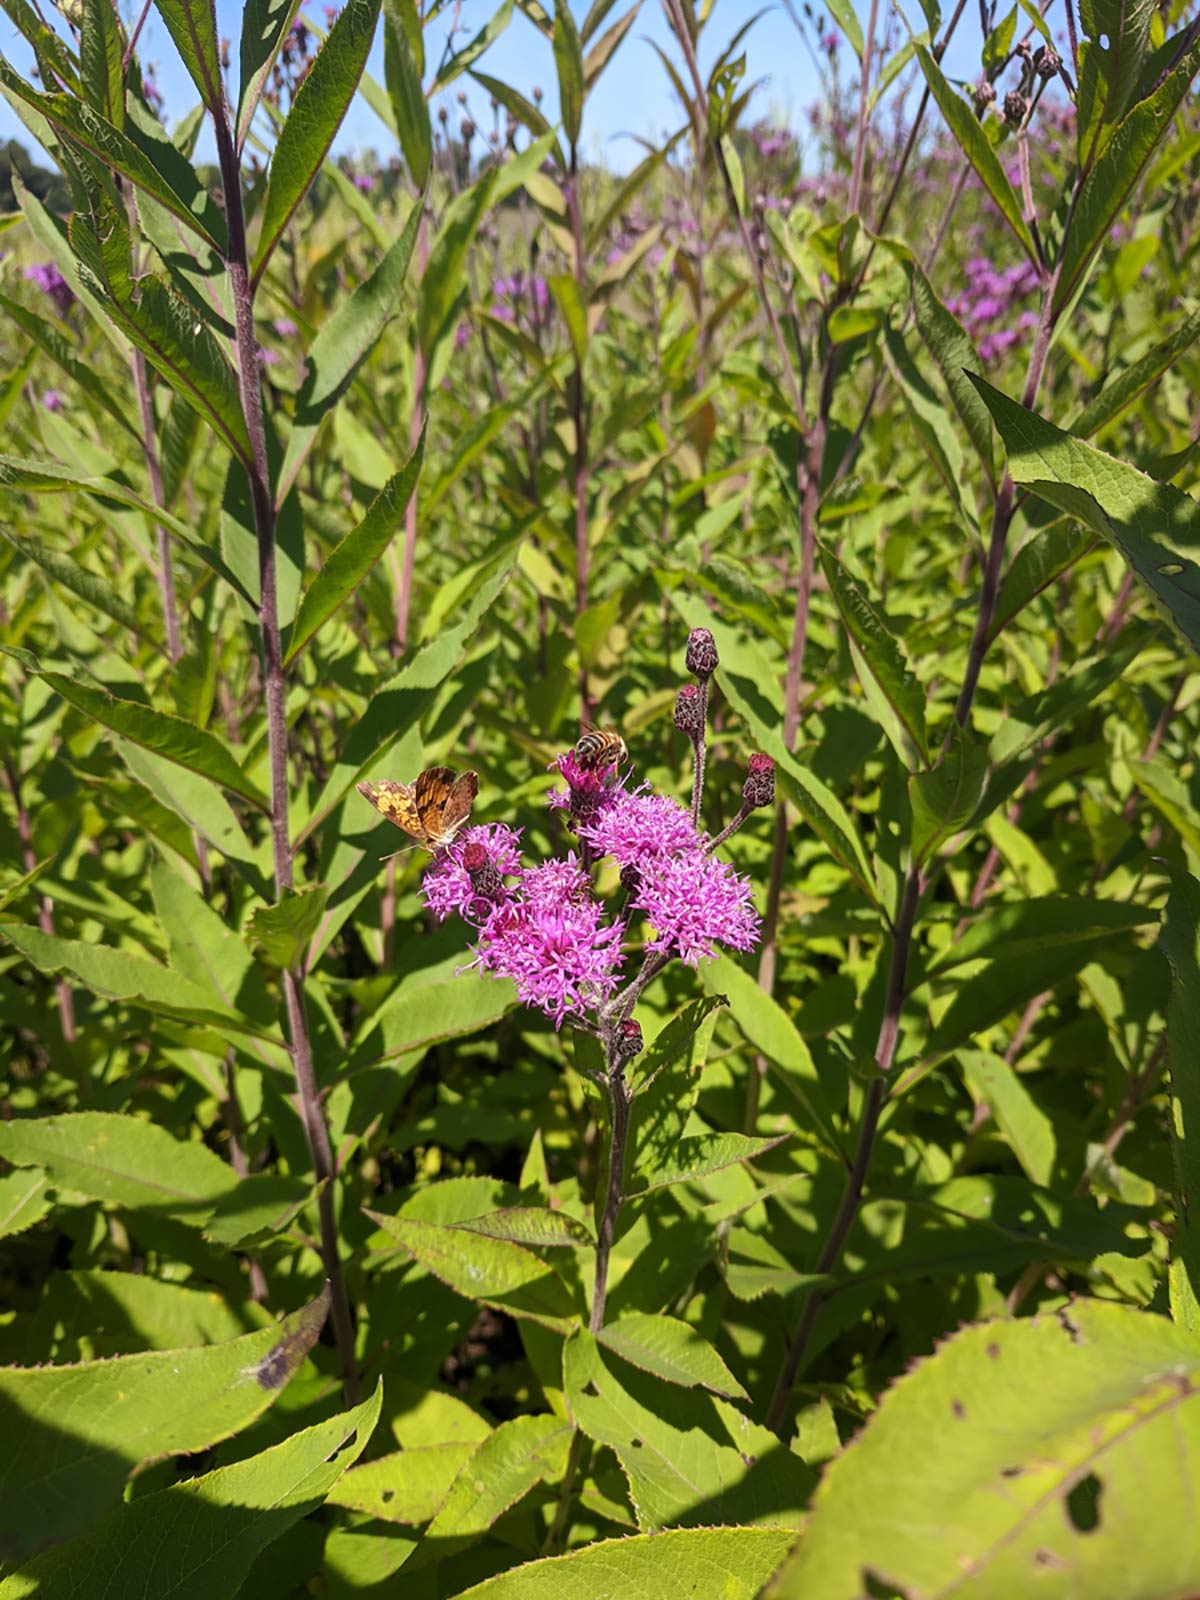 Vernonia missurica and Pollinators